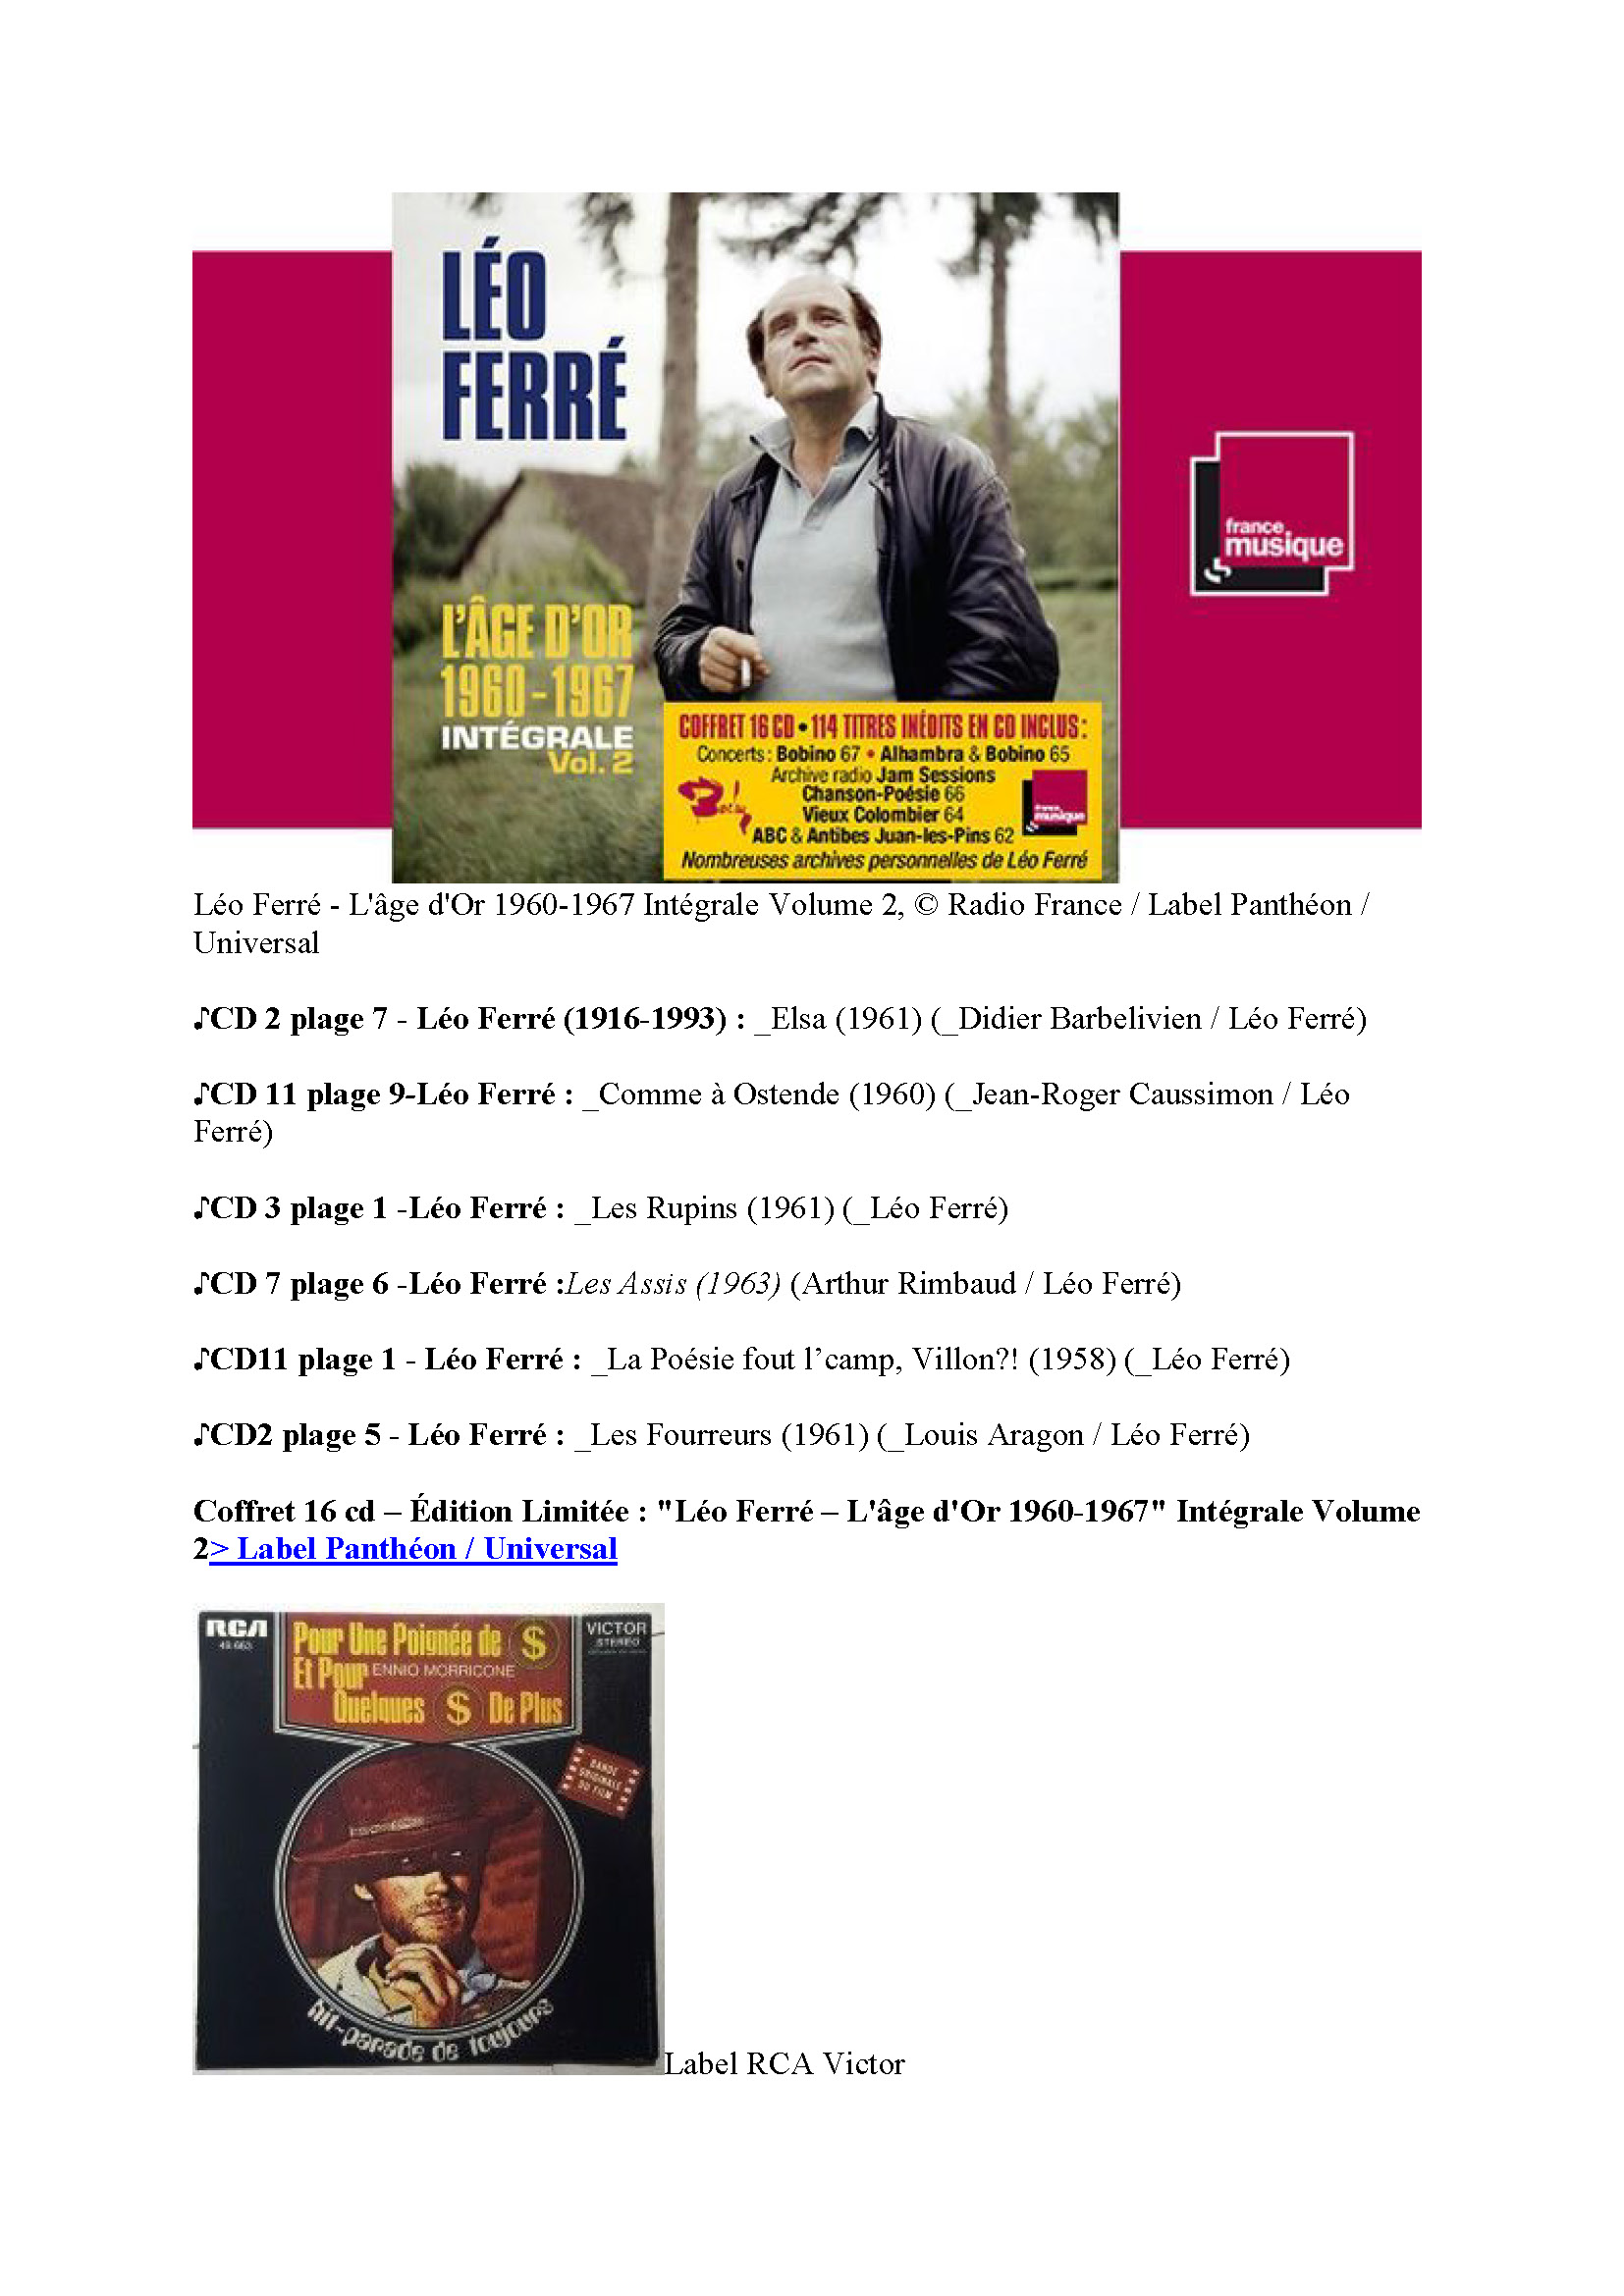 10/10/2020 France Musique Rencontre avec Mathieu Ferré et jean-Michel Defaye